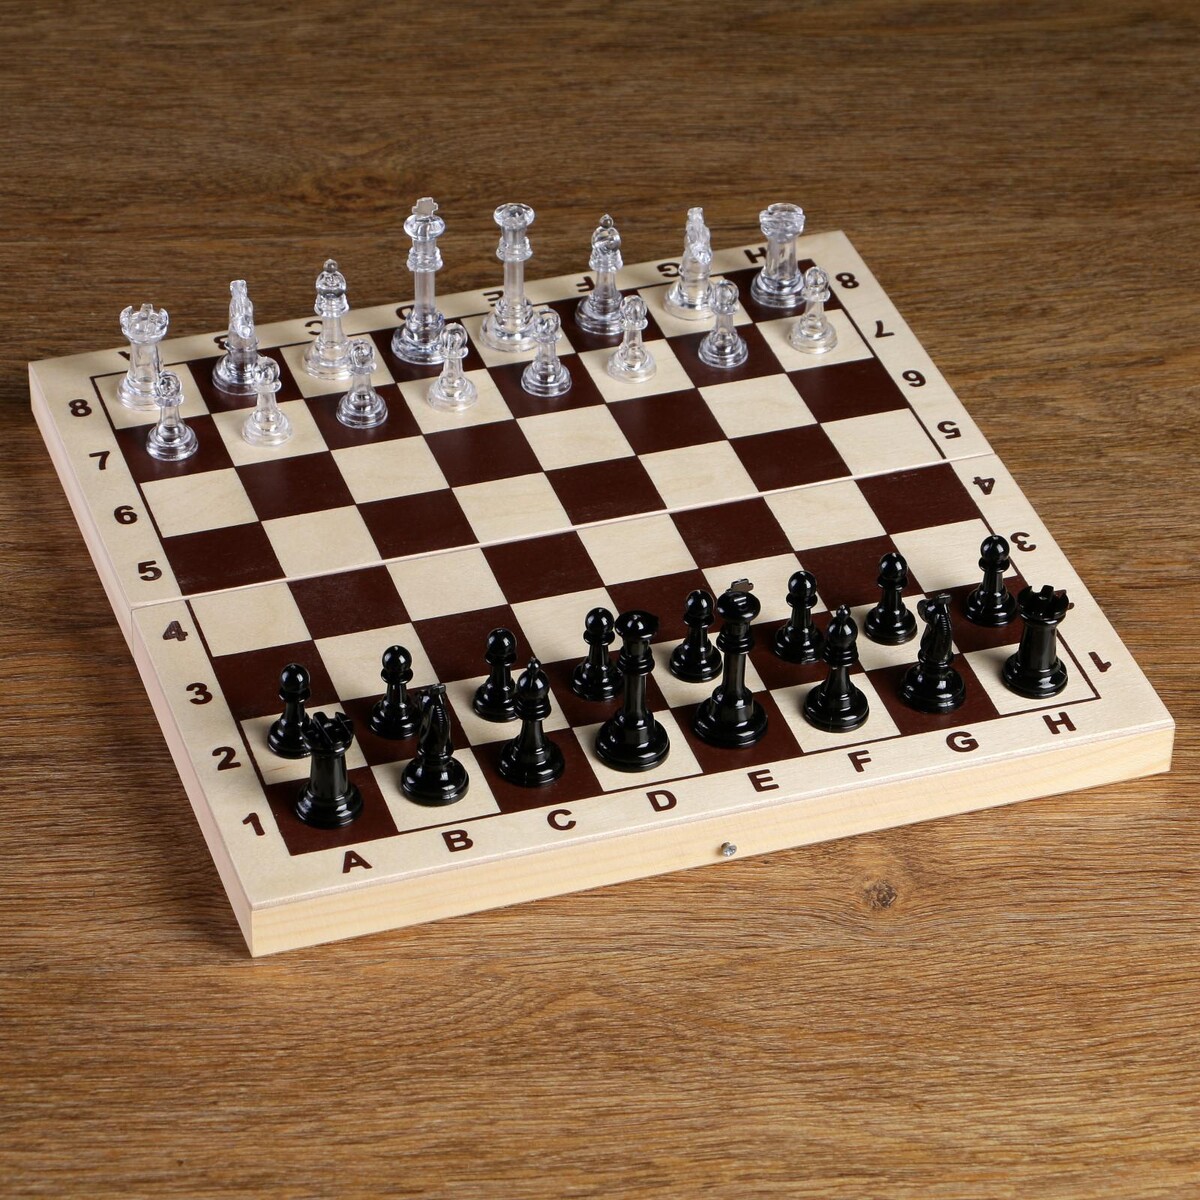 Шахматные фигуры, король h-5.8 см, пешка h-2.8 см шахматные приключения лисенка фимки